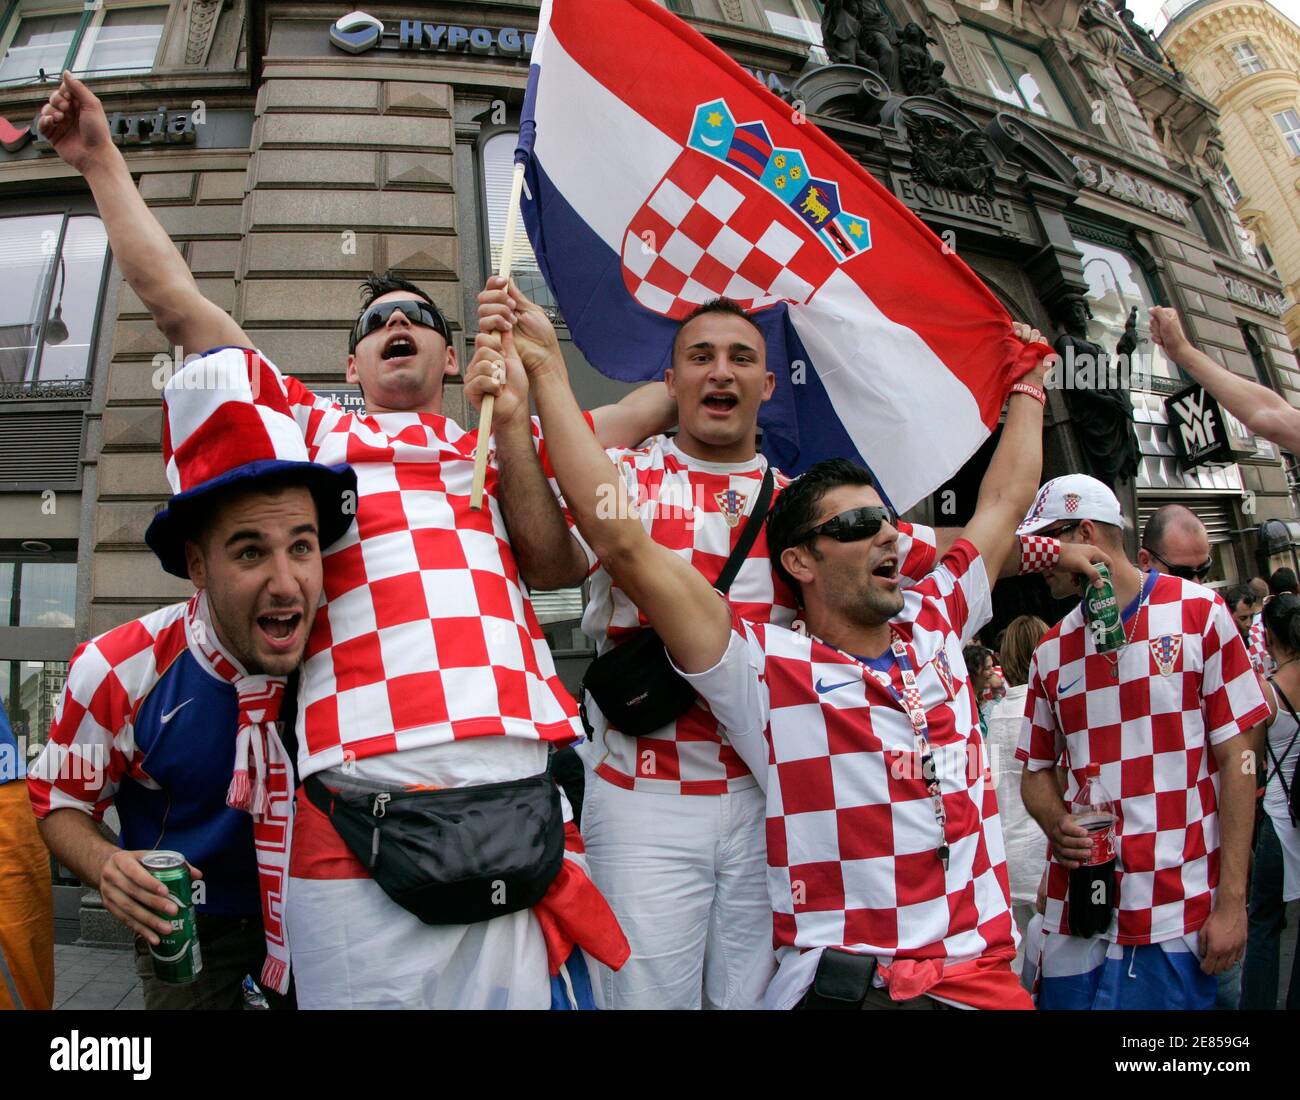 Kroatien-Fans feiern vor der Euro 2008 Fußballspiel zwischen Kroatien und der Türkei am Stephansplatz-Platz in Wien 20. Juni 2008.  REUTERS/Herwig Prammer (Österreich) Stockfoto